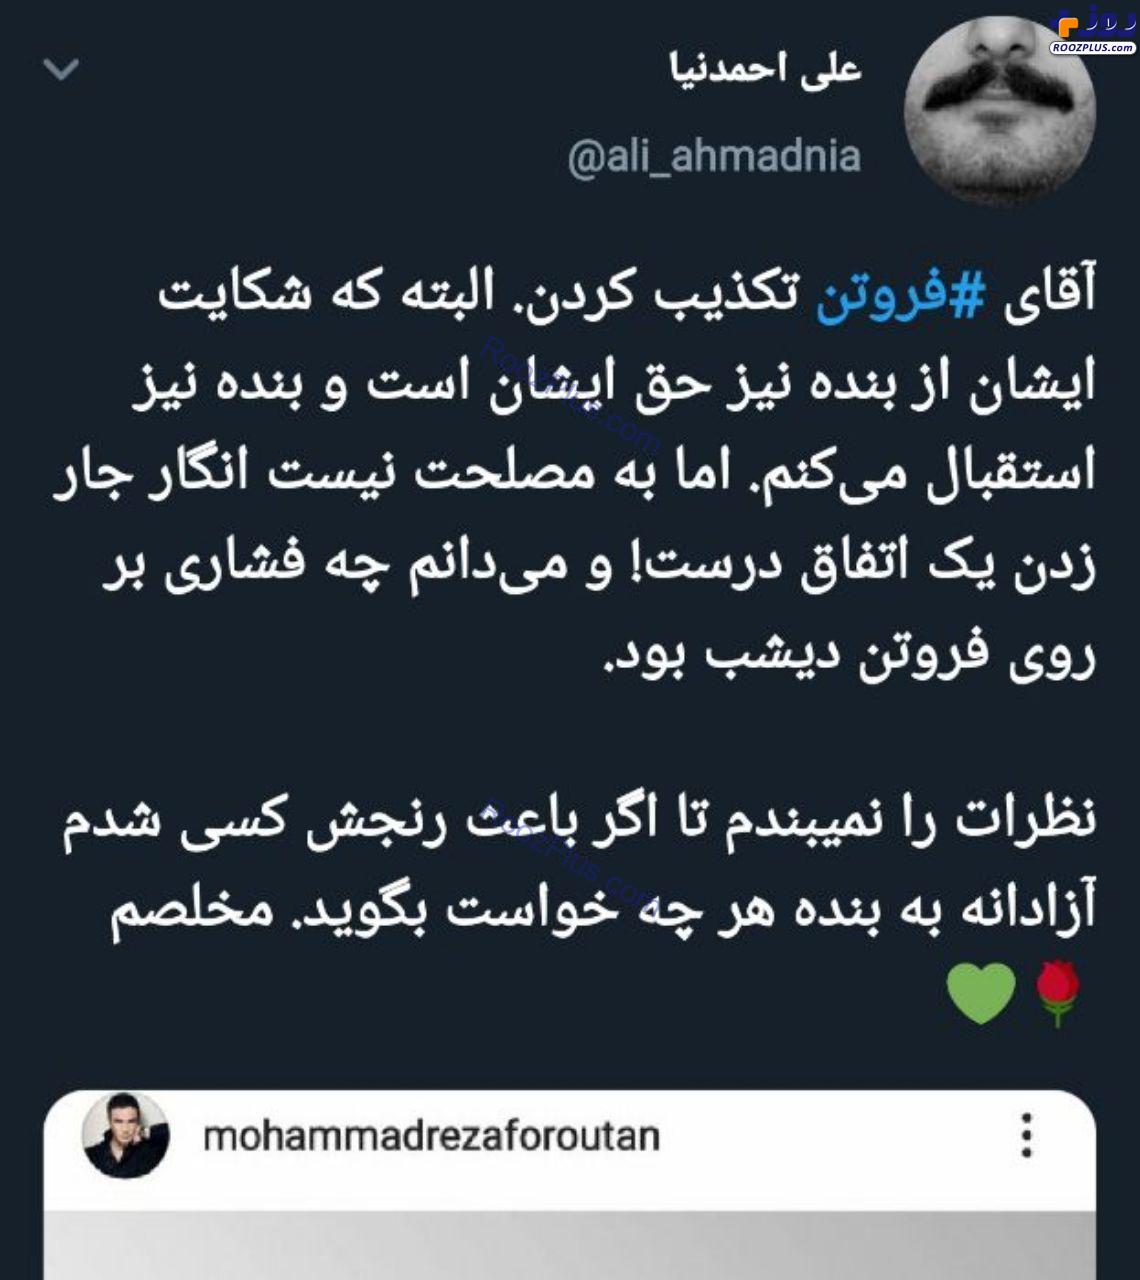 واکنش خبرنگاری که خبر حاشیه ای محمدرضا فروتن را نشر داد +عکس